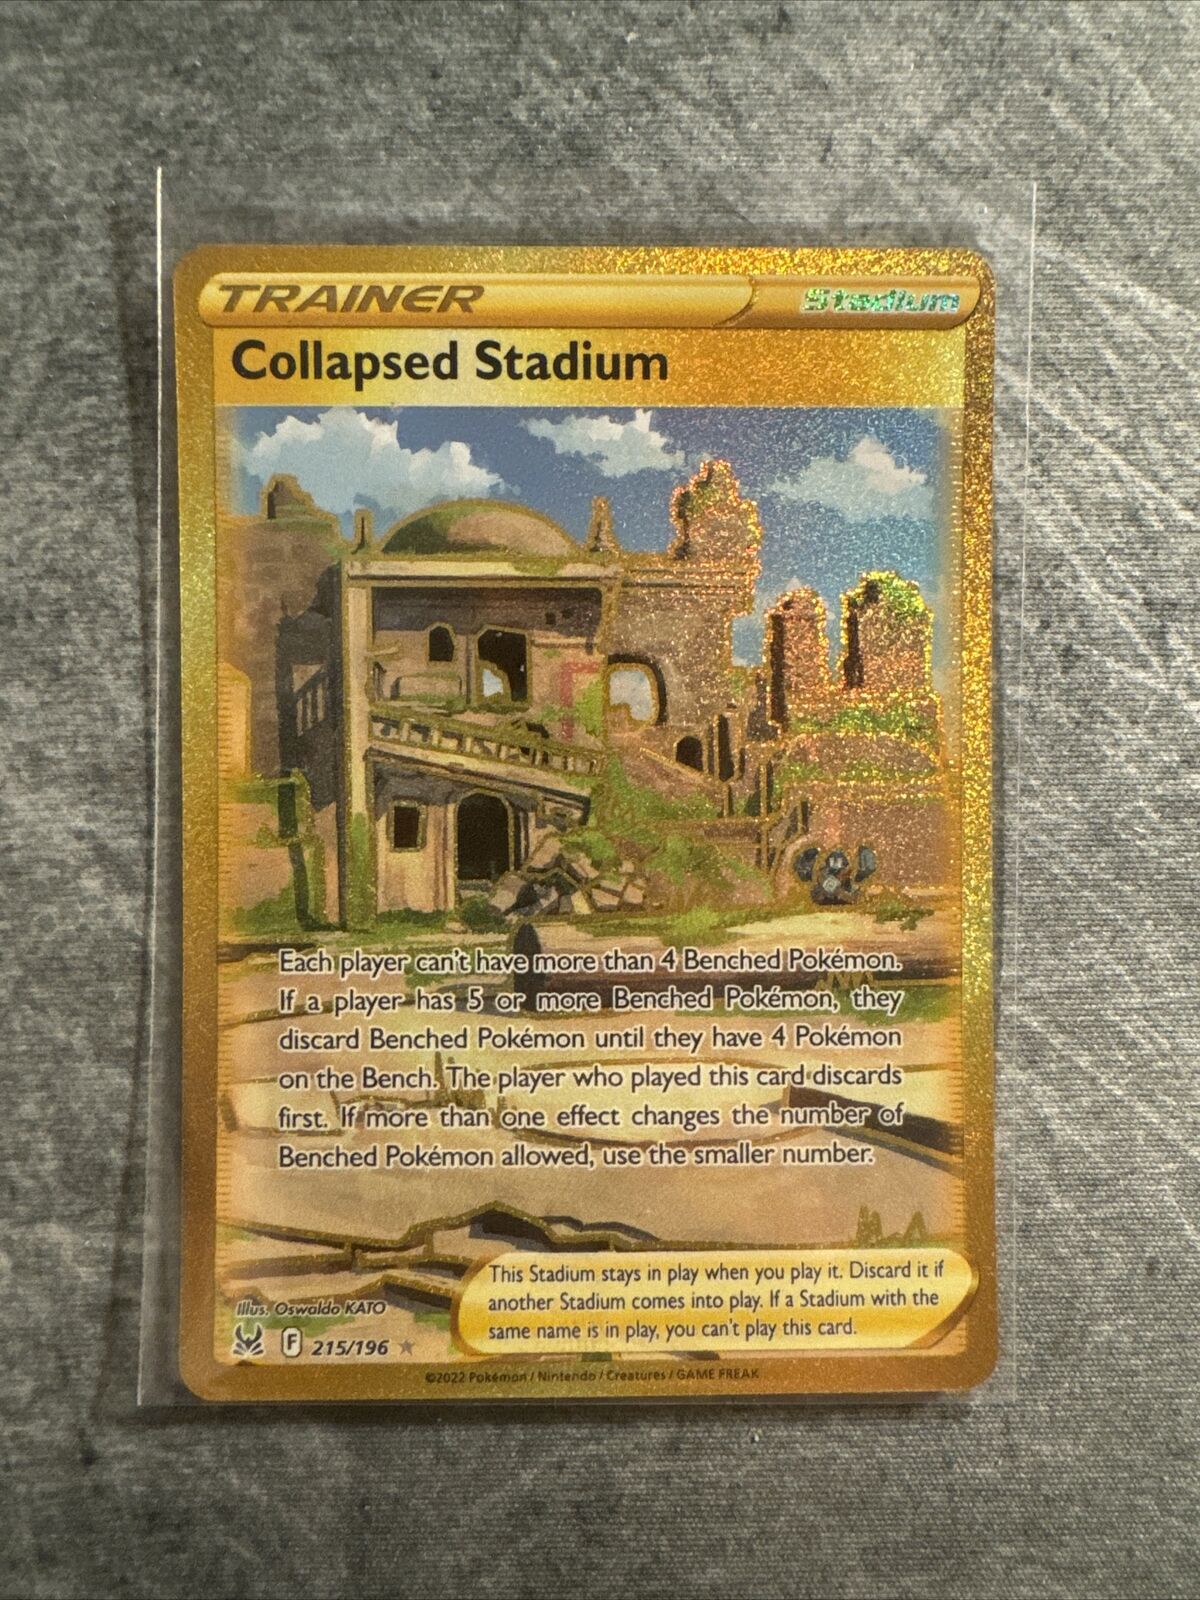 2022 Pokemon Collapsed Stadium Lost Origin Secret Rare Gold #215/196